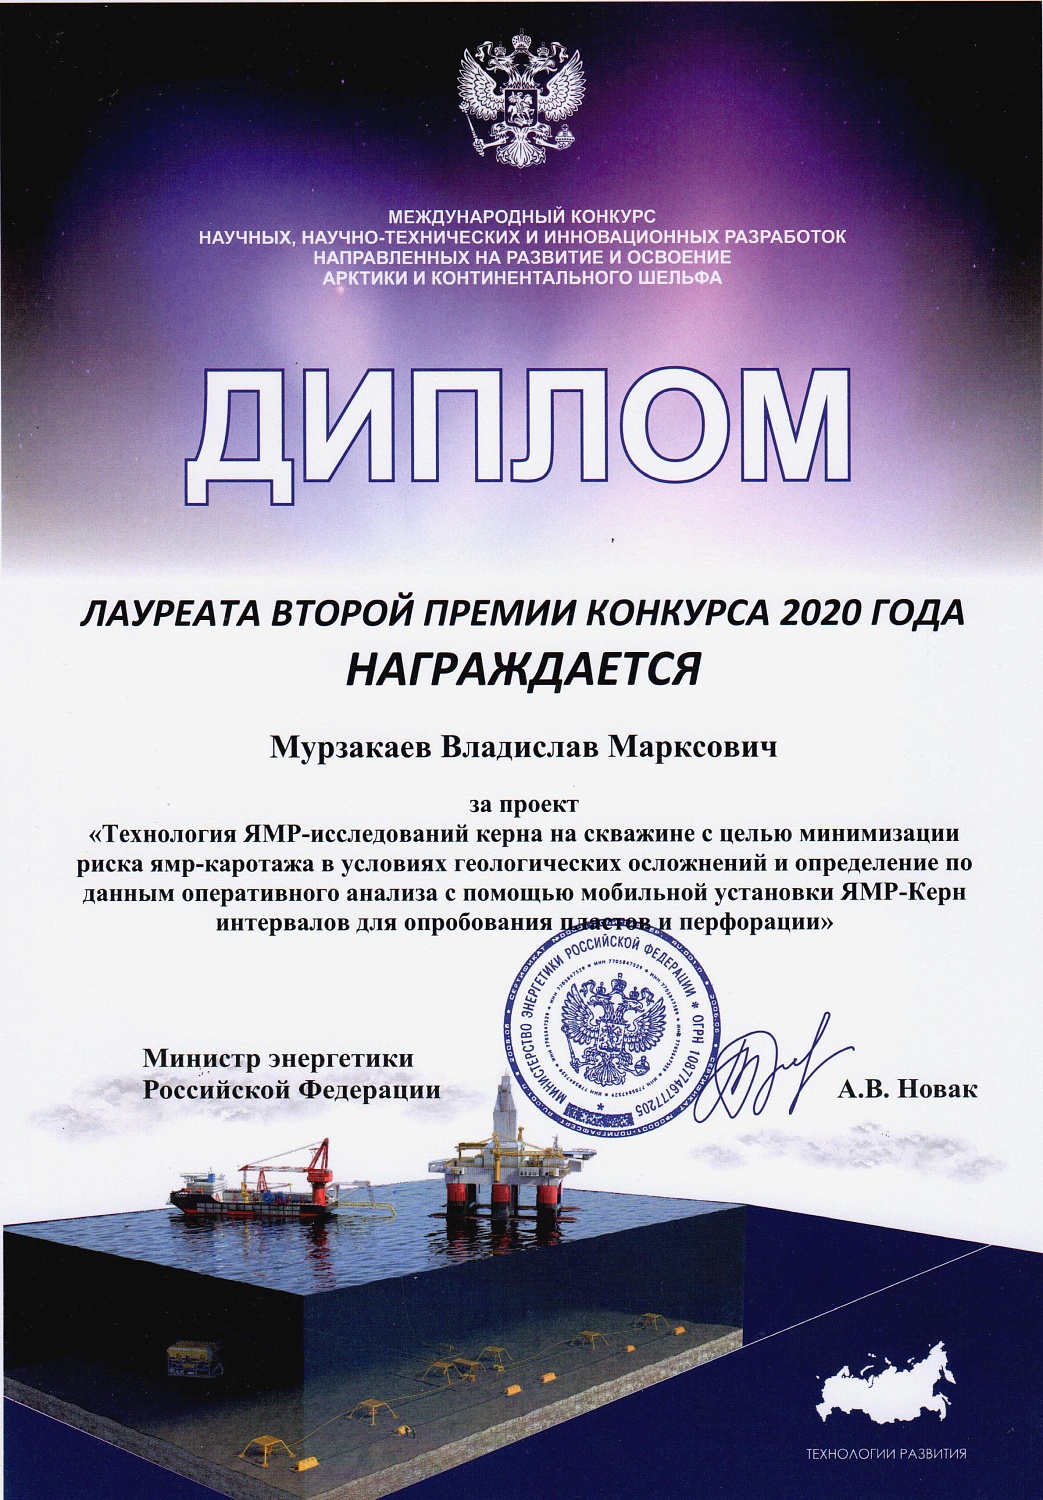 ТНГ-Групп стала лауреатом международного конкурса разработок по освоению Арктики и континентального шельфа